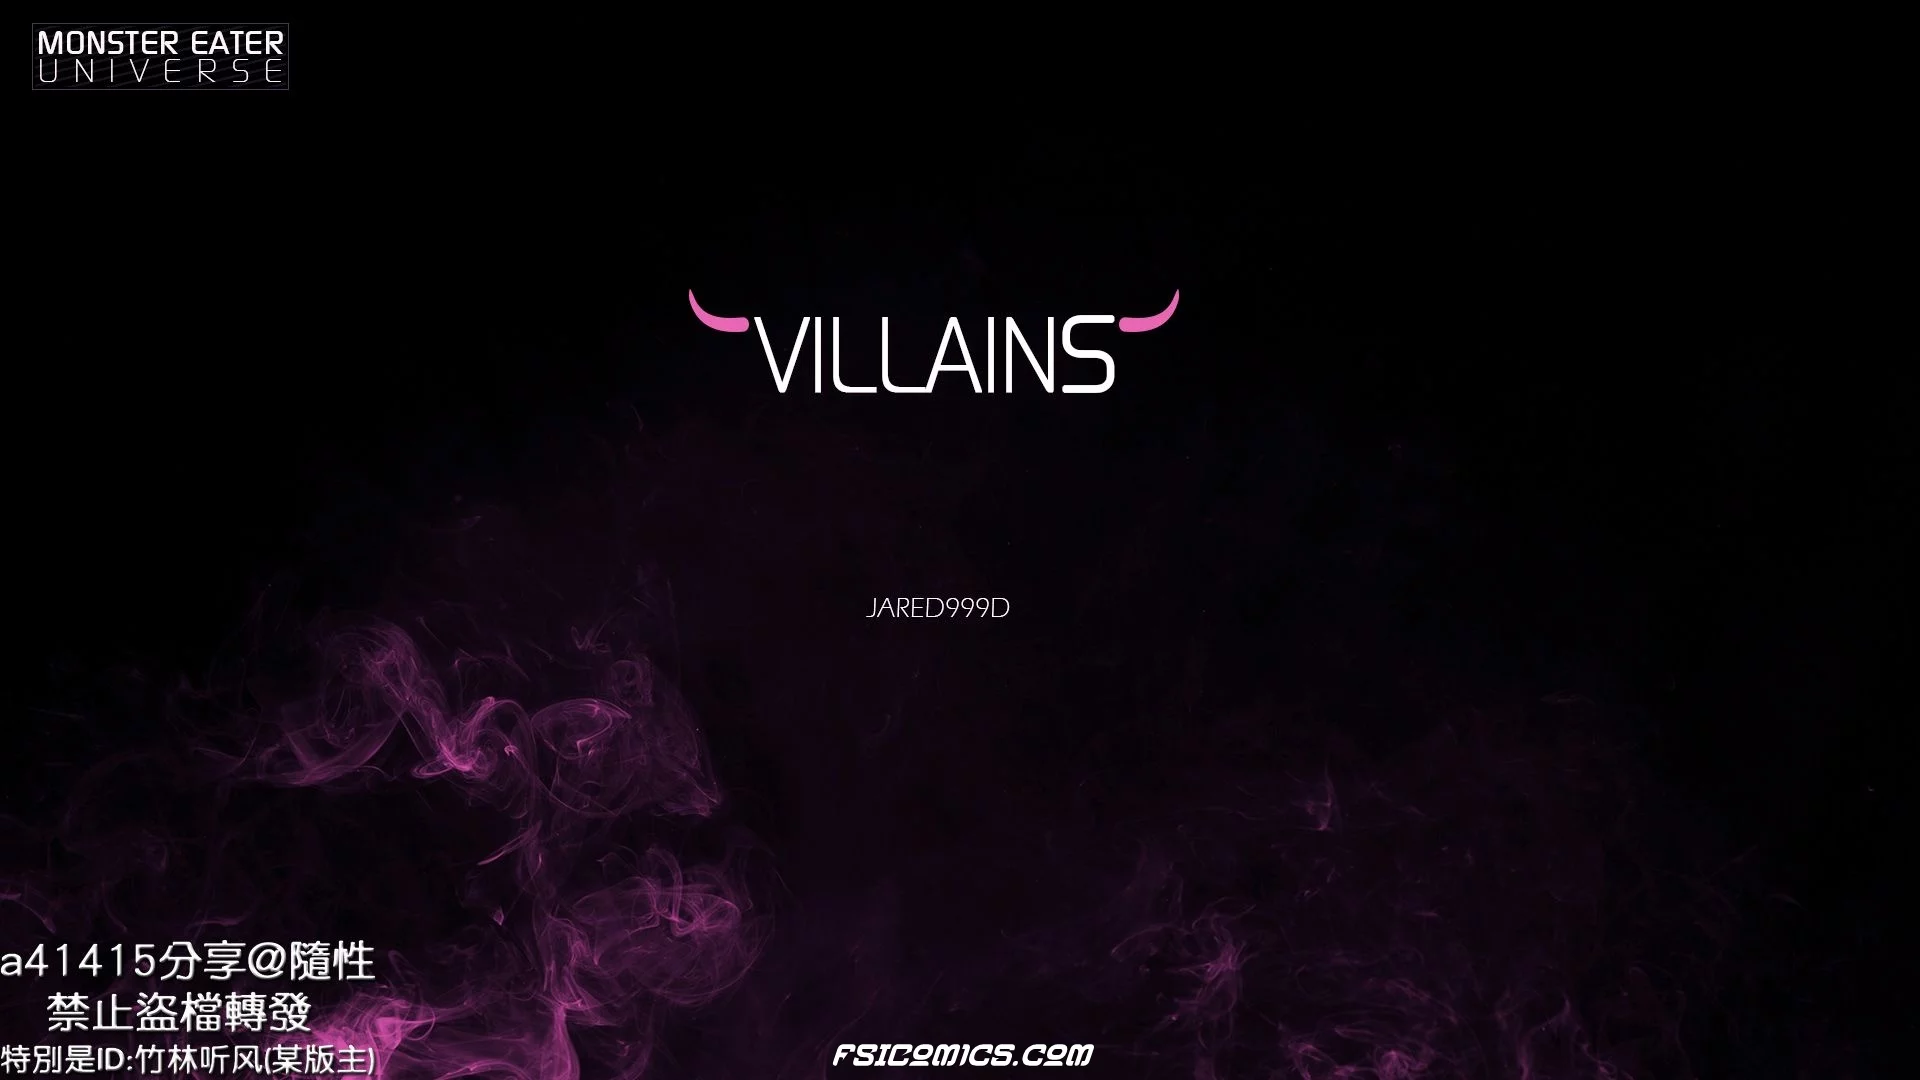 Villains Chapter 1 -Jared999D - 141 - FSIComics